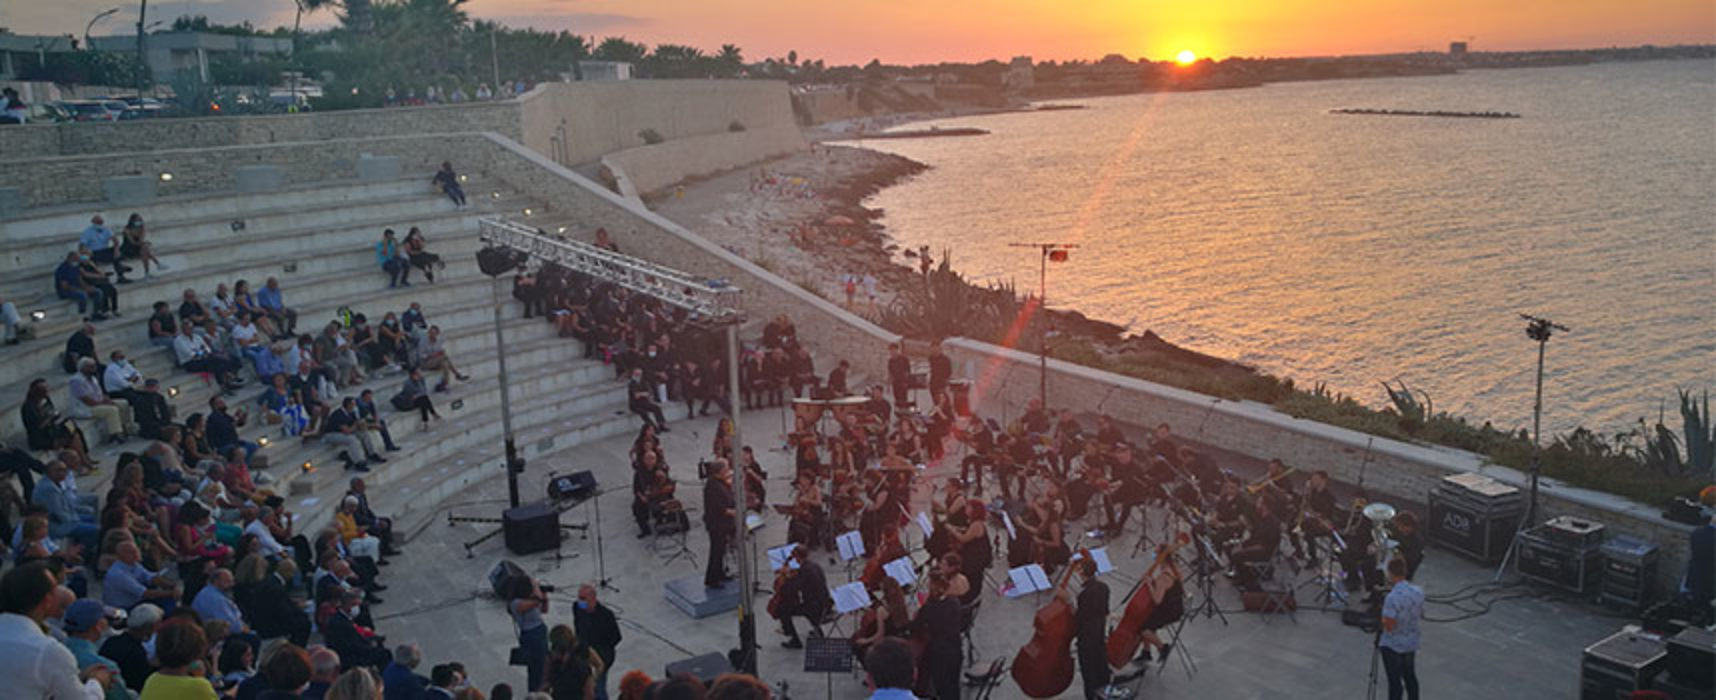 L’Orchestra Biagio Abbate emoziona con le note di Verdi al tramonto di Bisceglie / VIDEO e FOTO